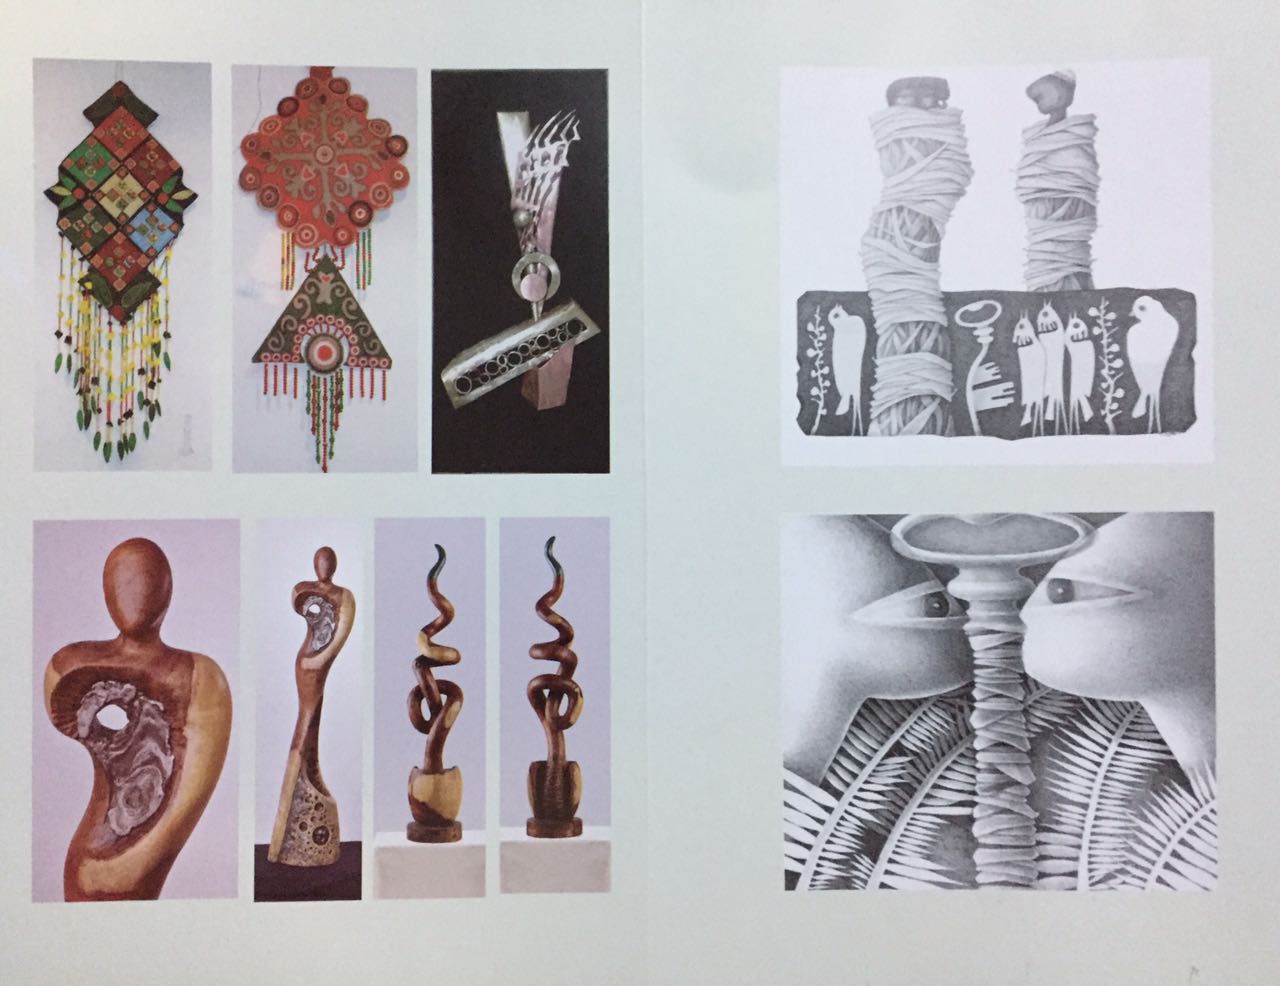 12أعمال فنية بمعرض ابداعات نوعية بمتحف محمود مختار  (1)